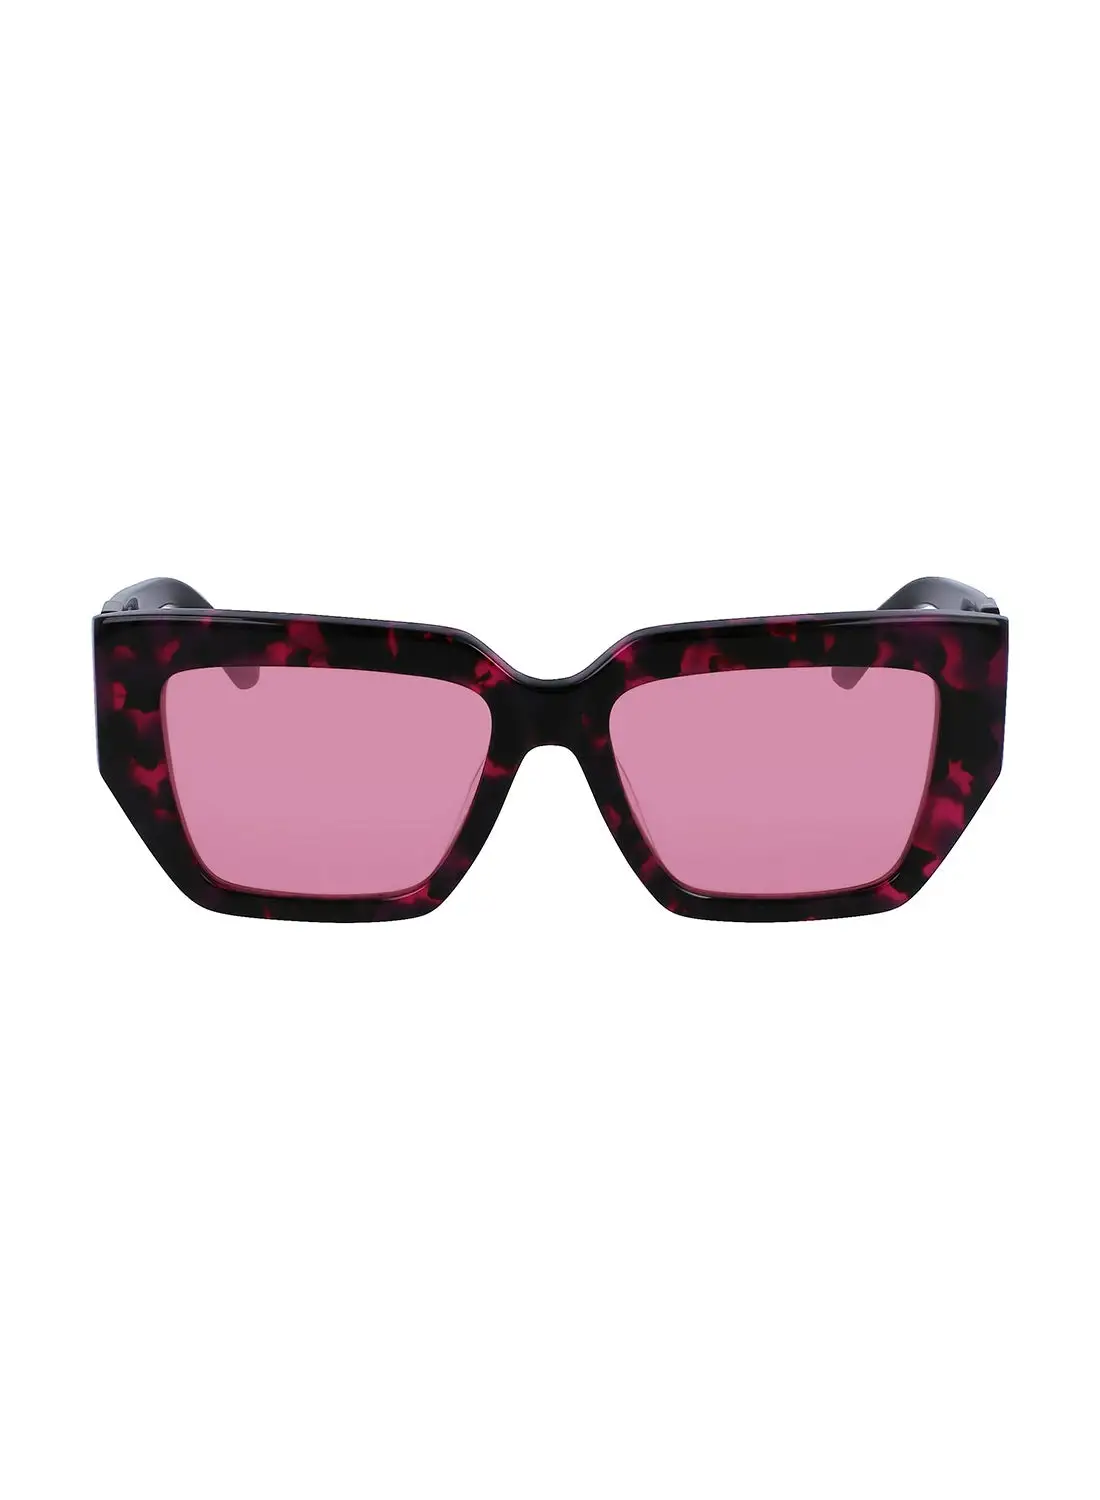 Calvin Klein Jeans Women's Butterfly Sunglasses - CKJ23608S-234-5417 - Lens Size: 54 Mm